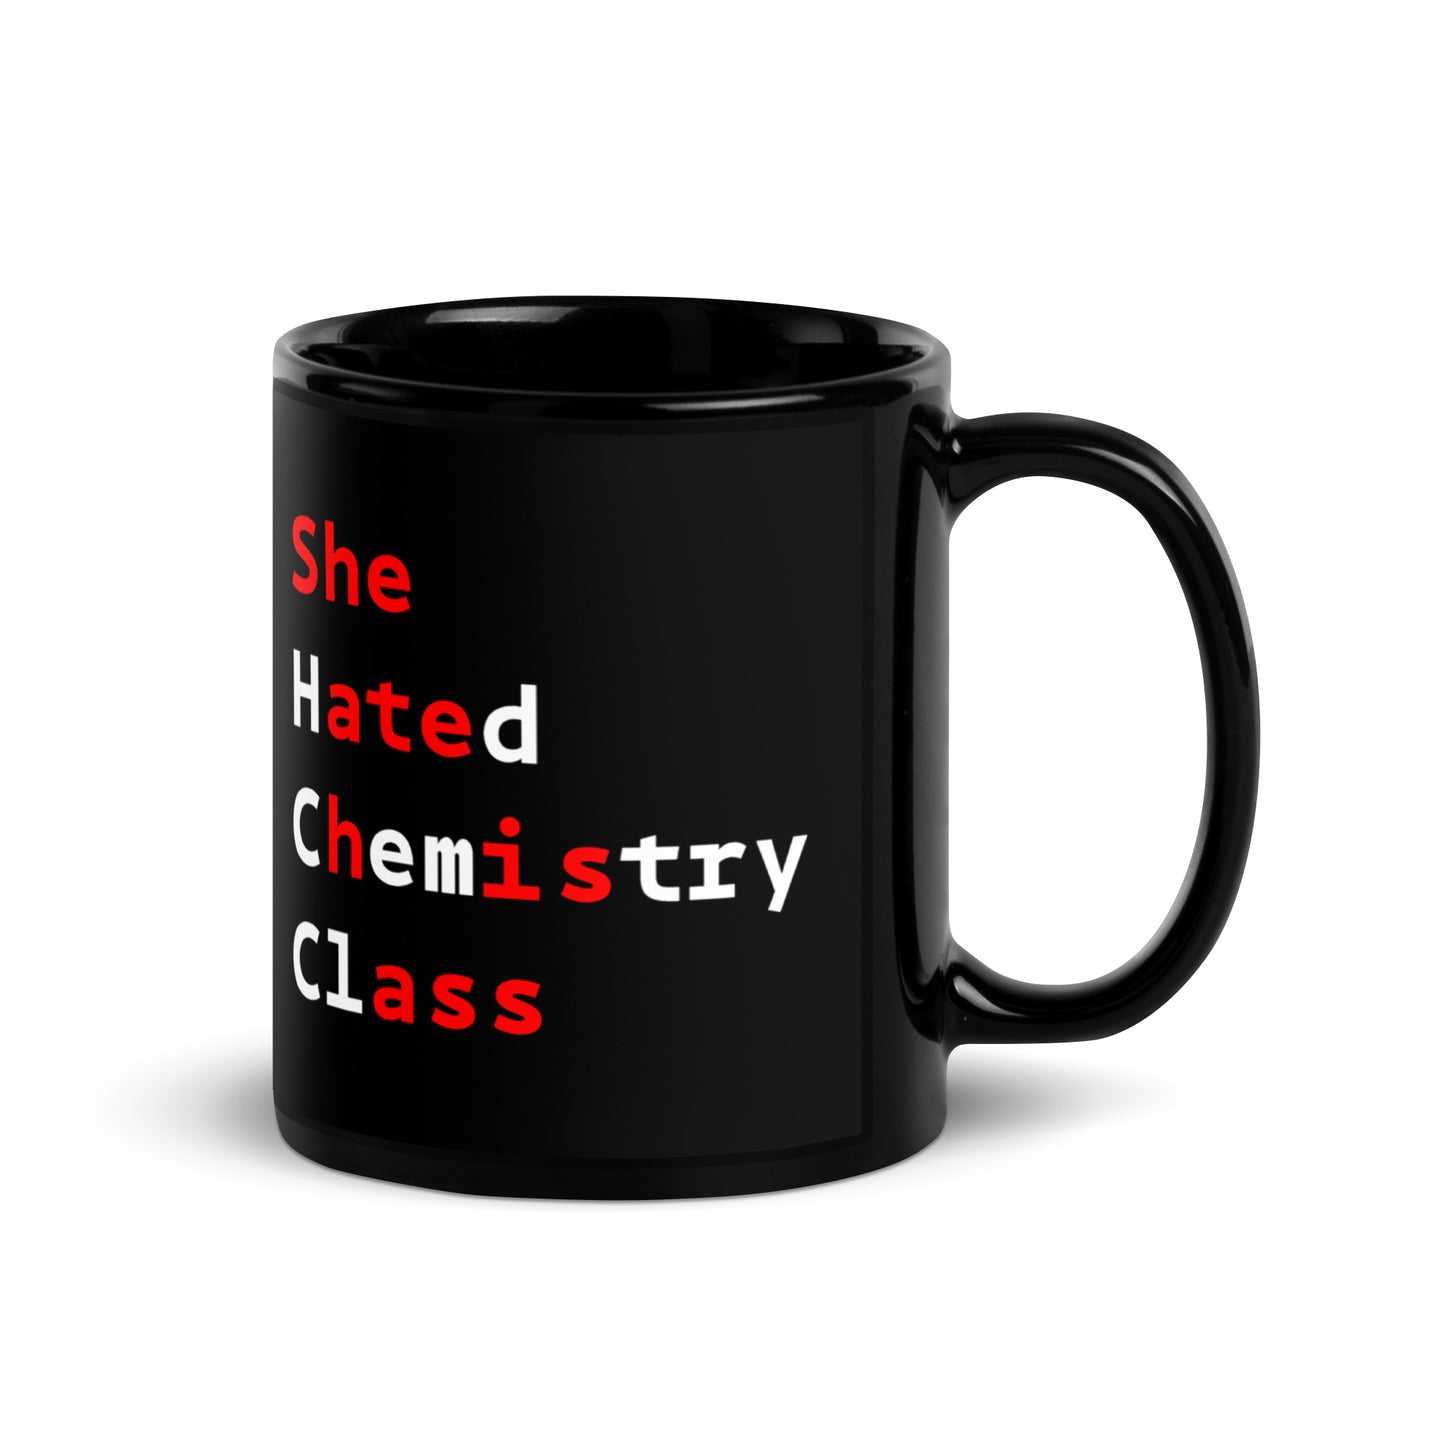 She Hated Chemistry Class Mug